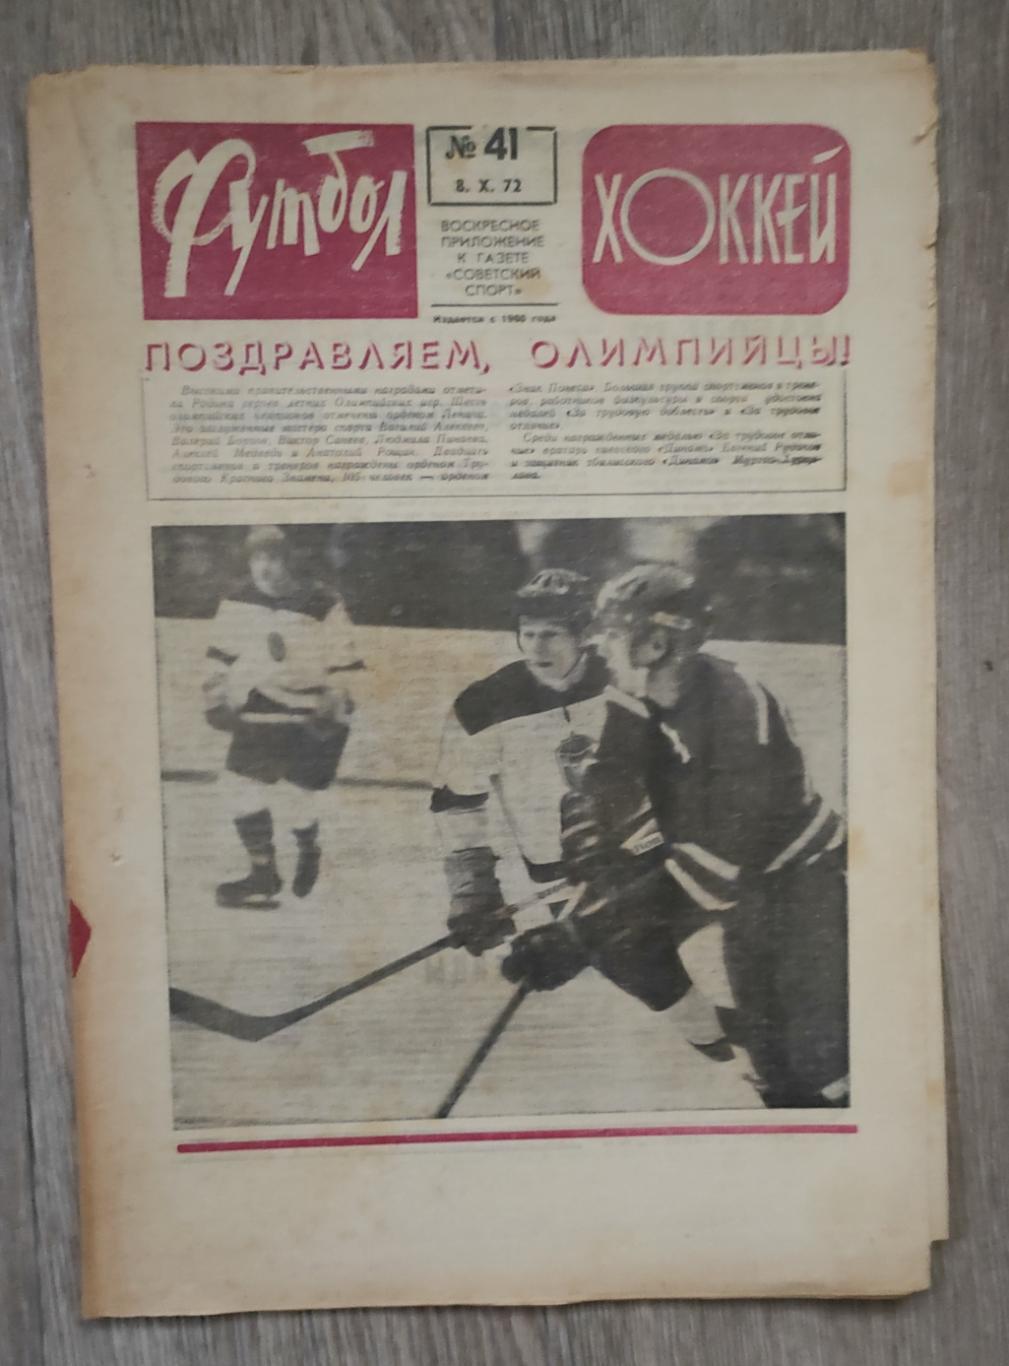 Футбол - Хоккей 1972. N41